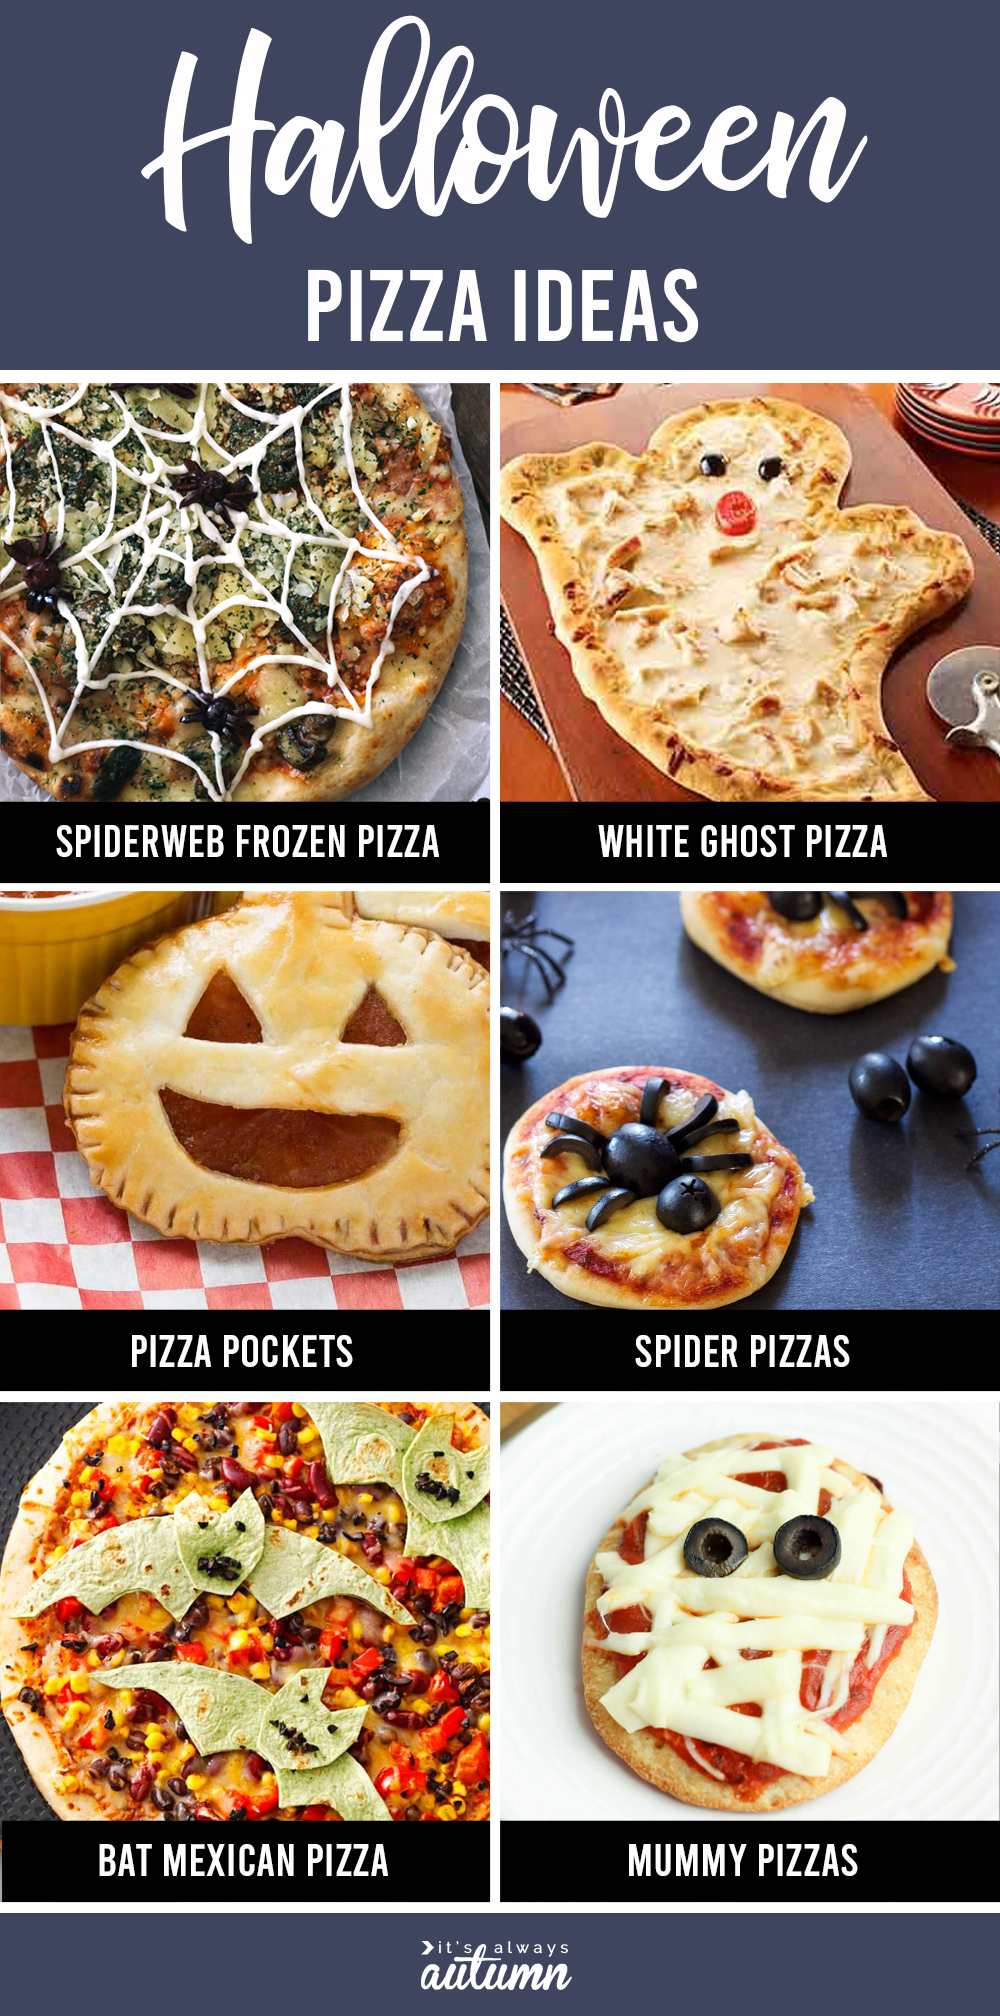 Halloween pizza ideas